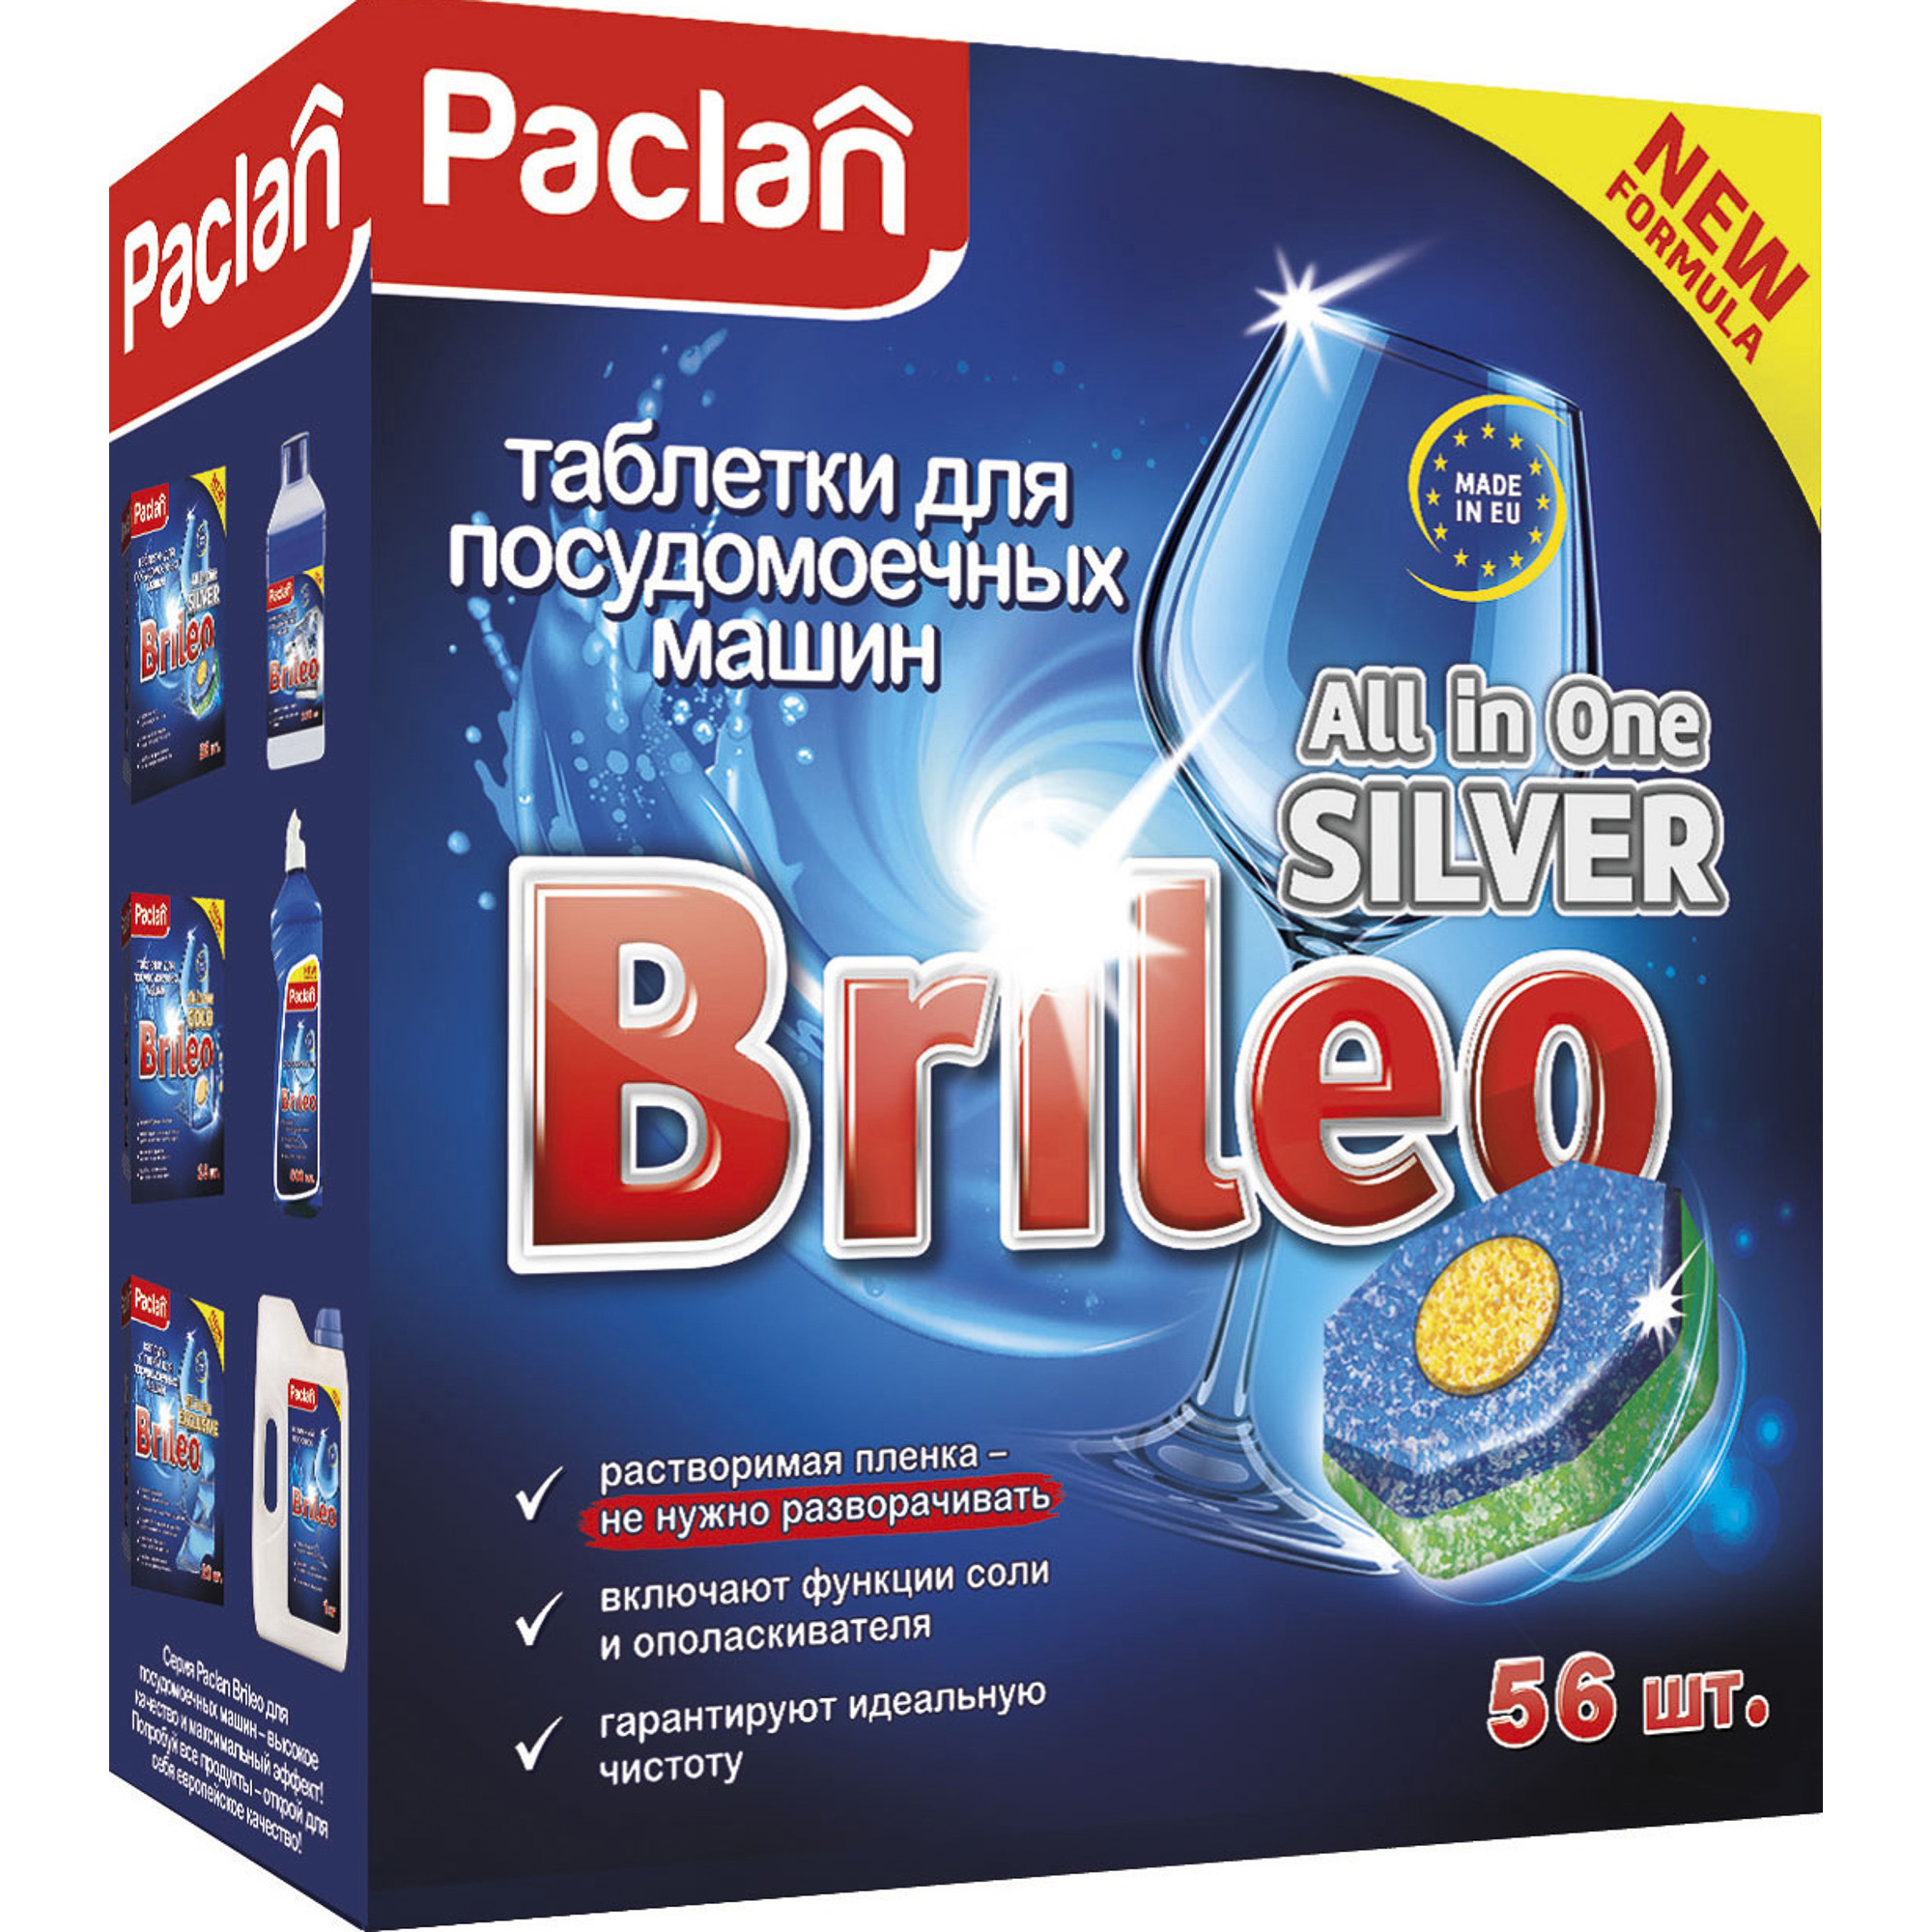 фото Таблетки для посудомоечных машин paclan brileo all in one silver 56 шт